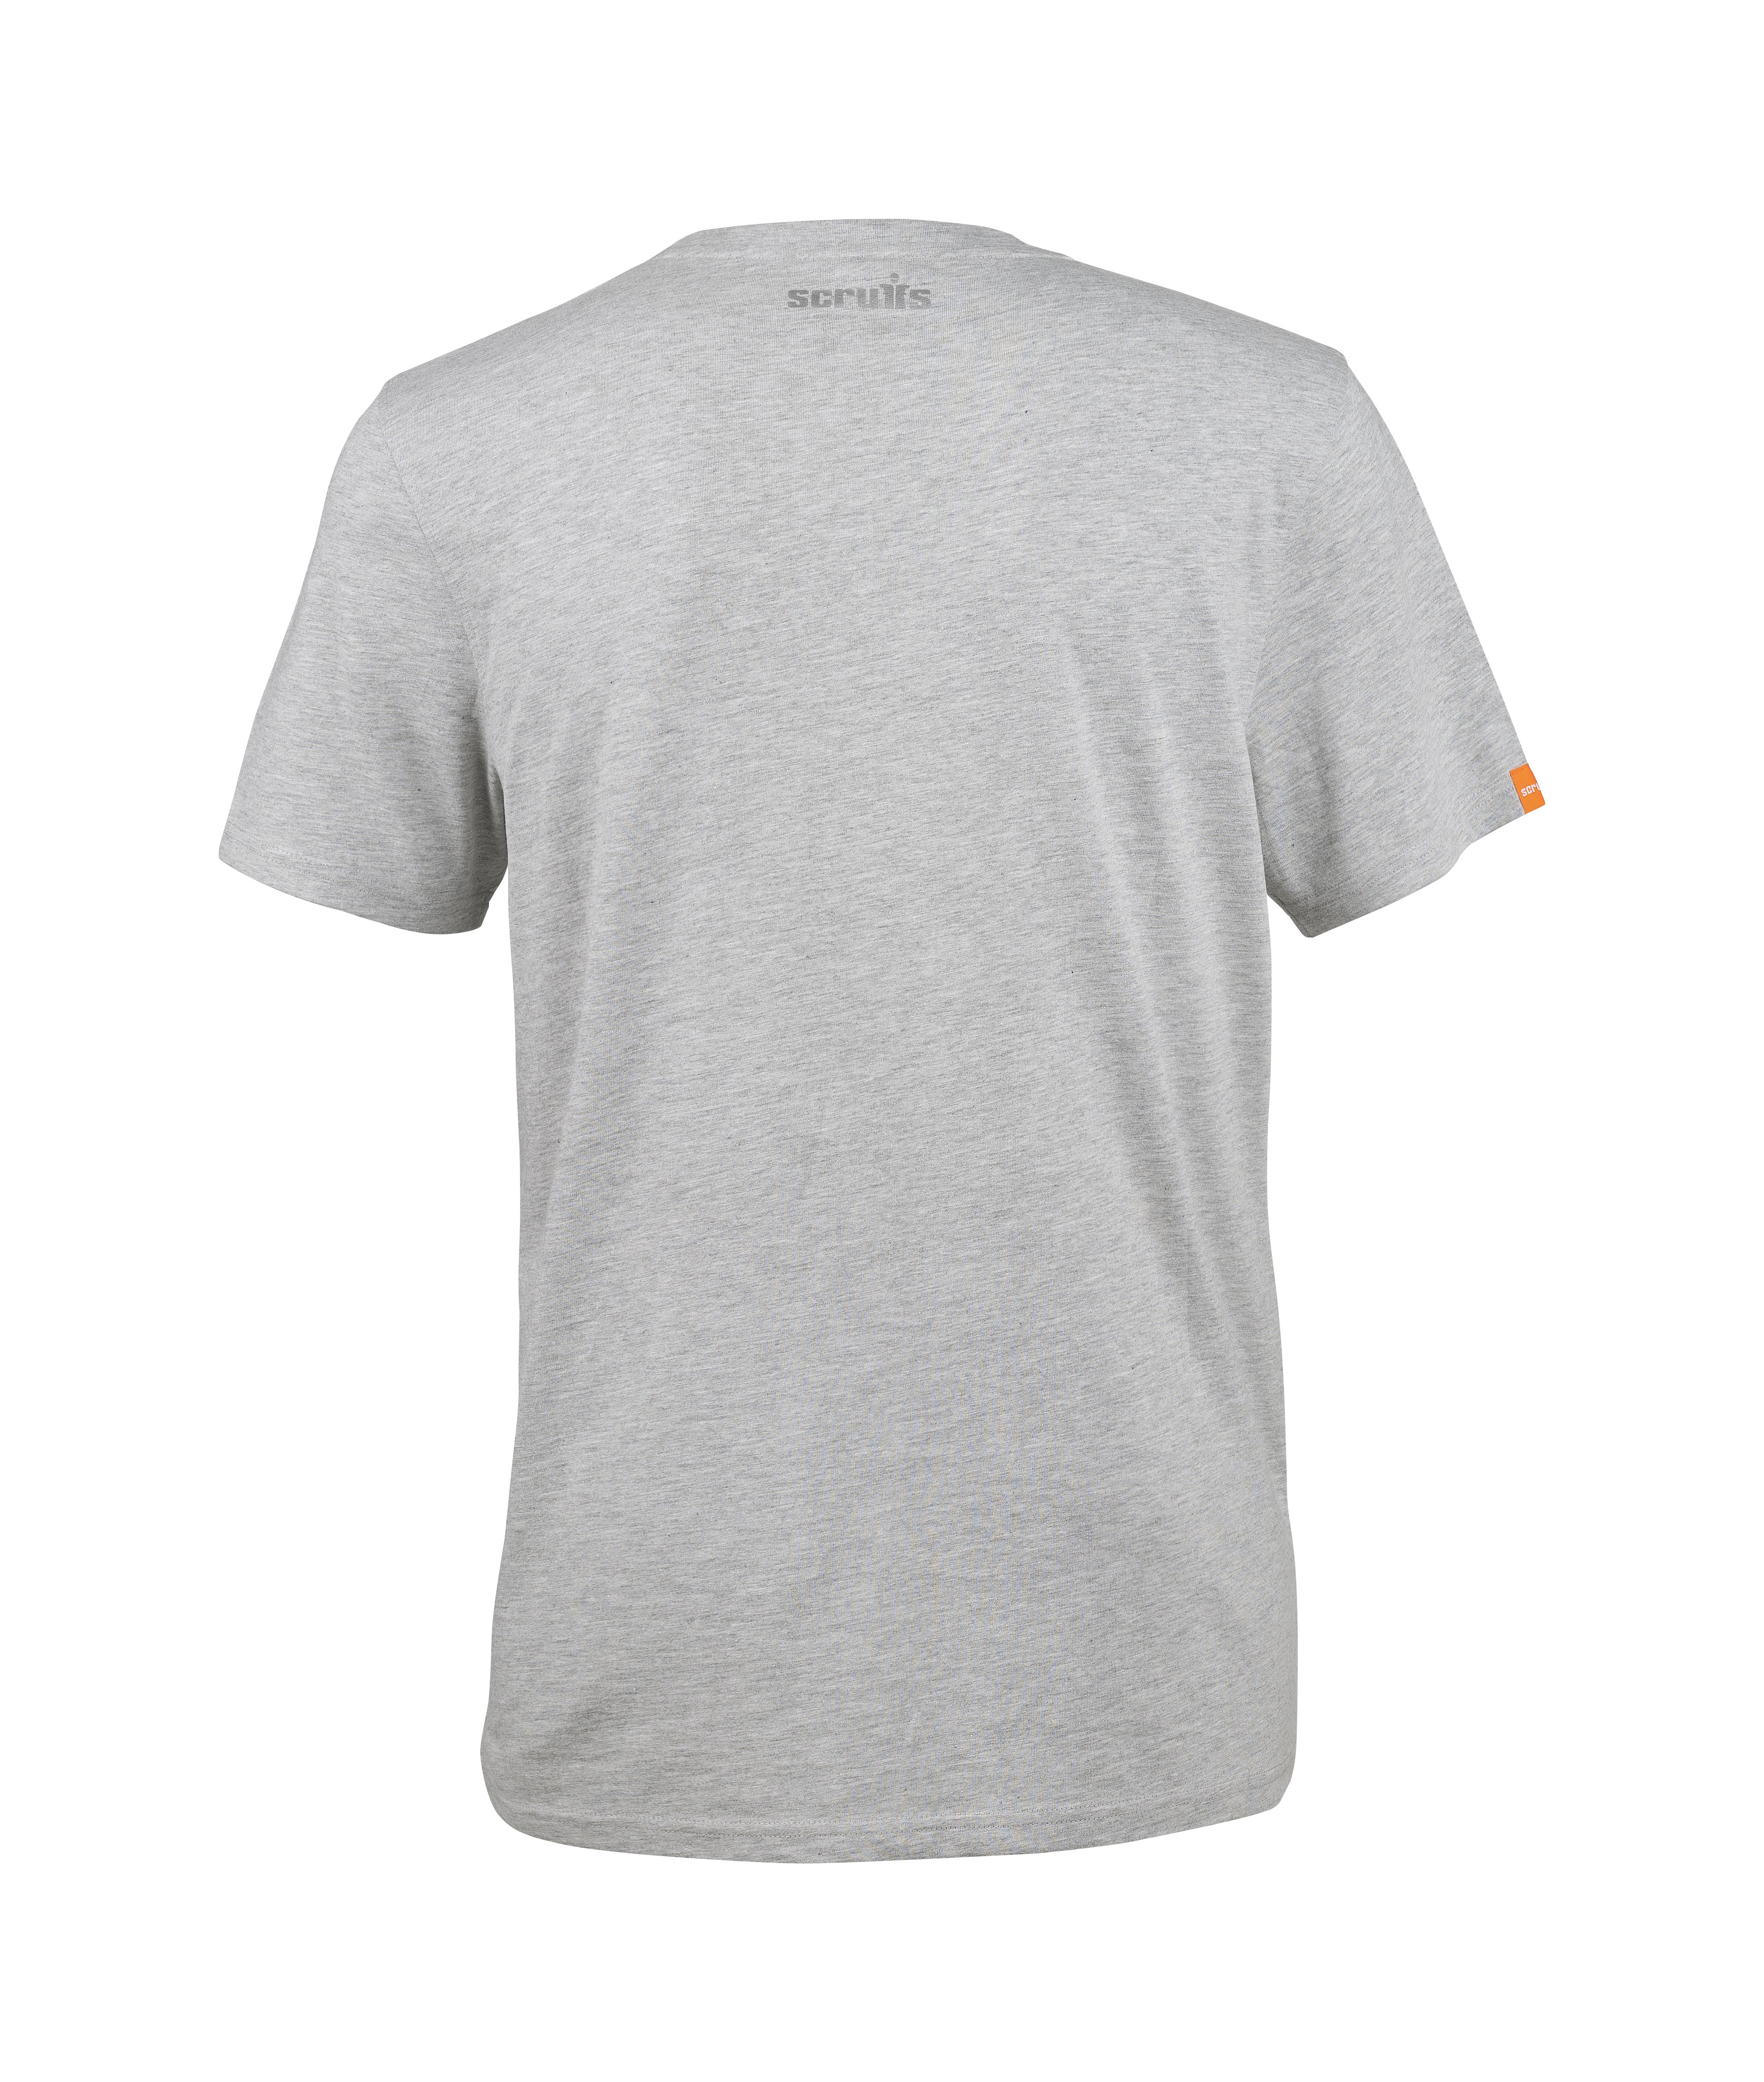 Scruffs Scottsdale Grey T-shirt X Large